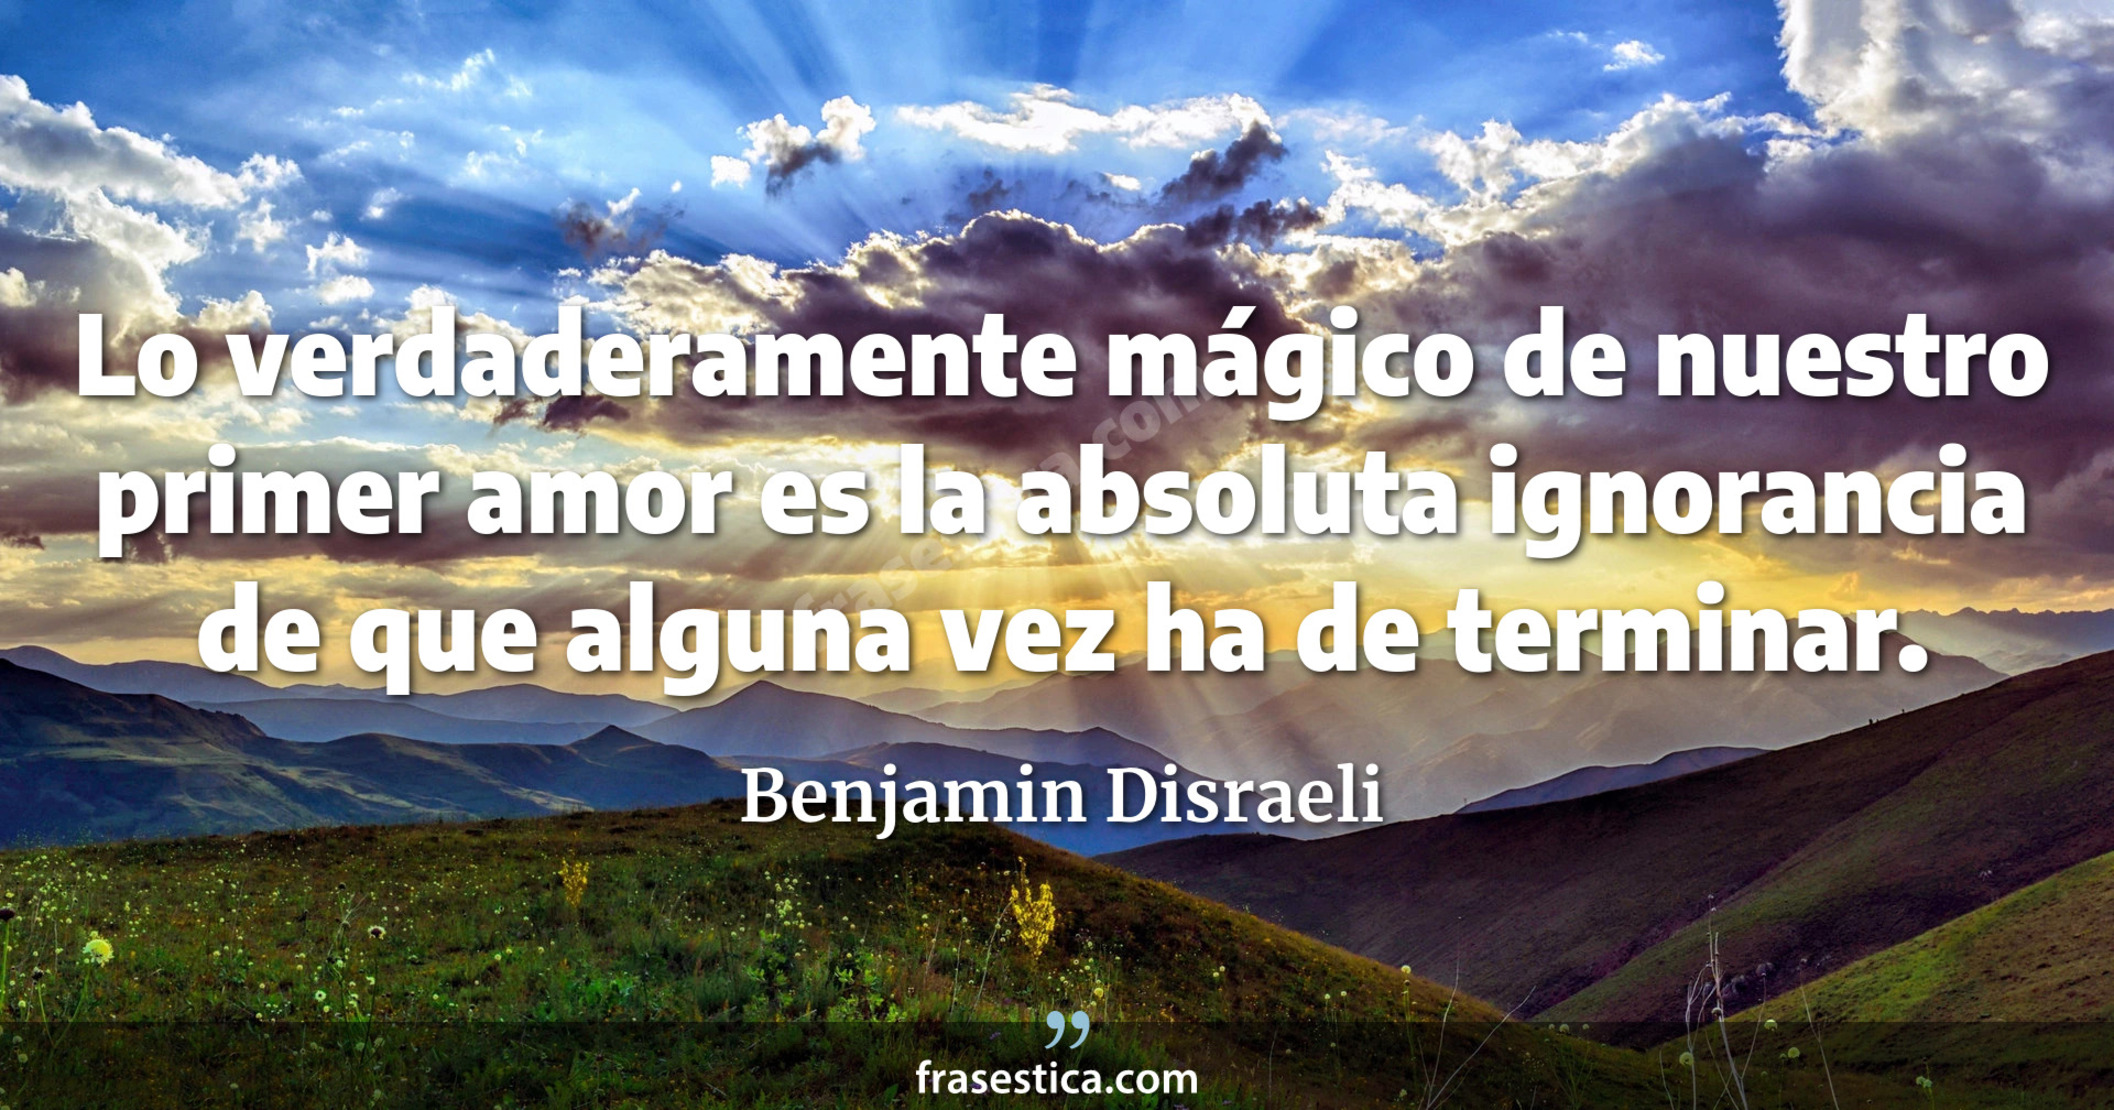 Lo verdaderamente mágico de nuestro primer amor es la absoluta ignorancia de que alguna vez ha de terminar. - Benjamin Disraeli